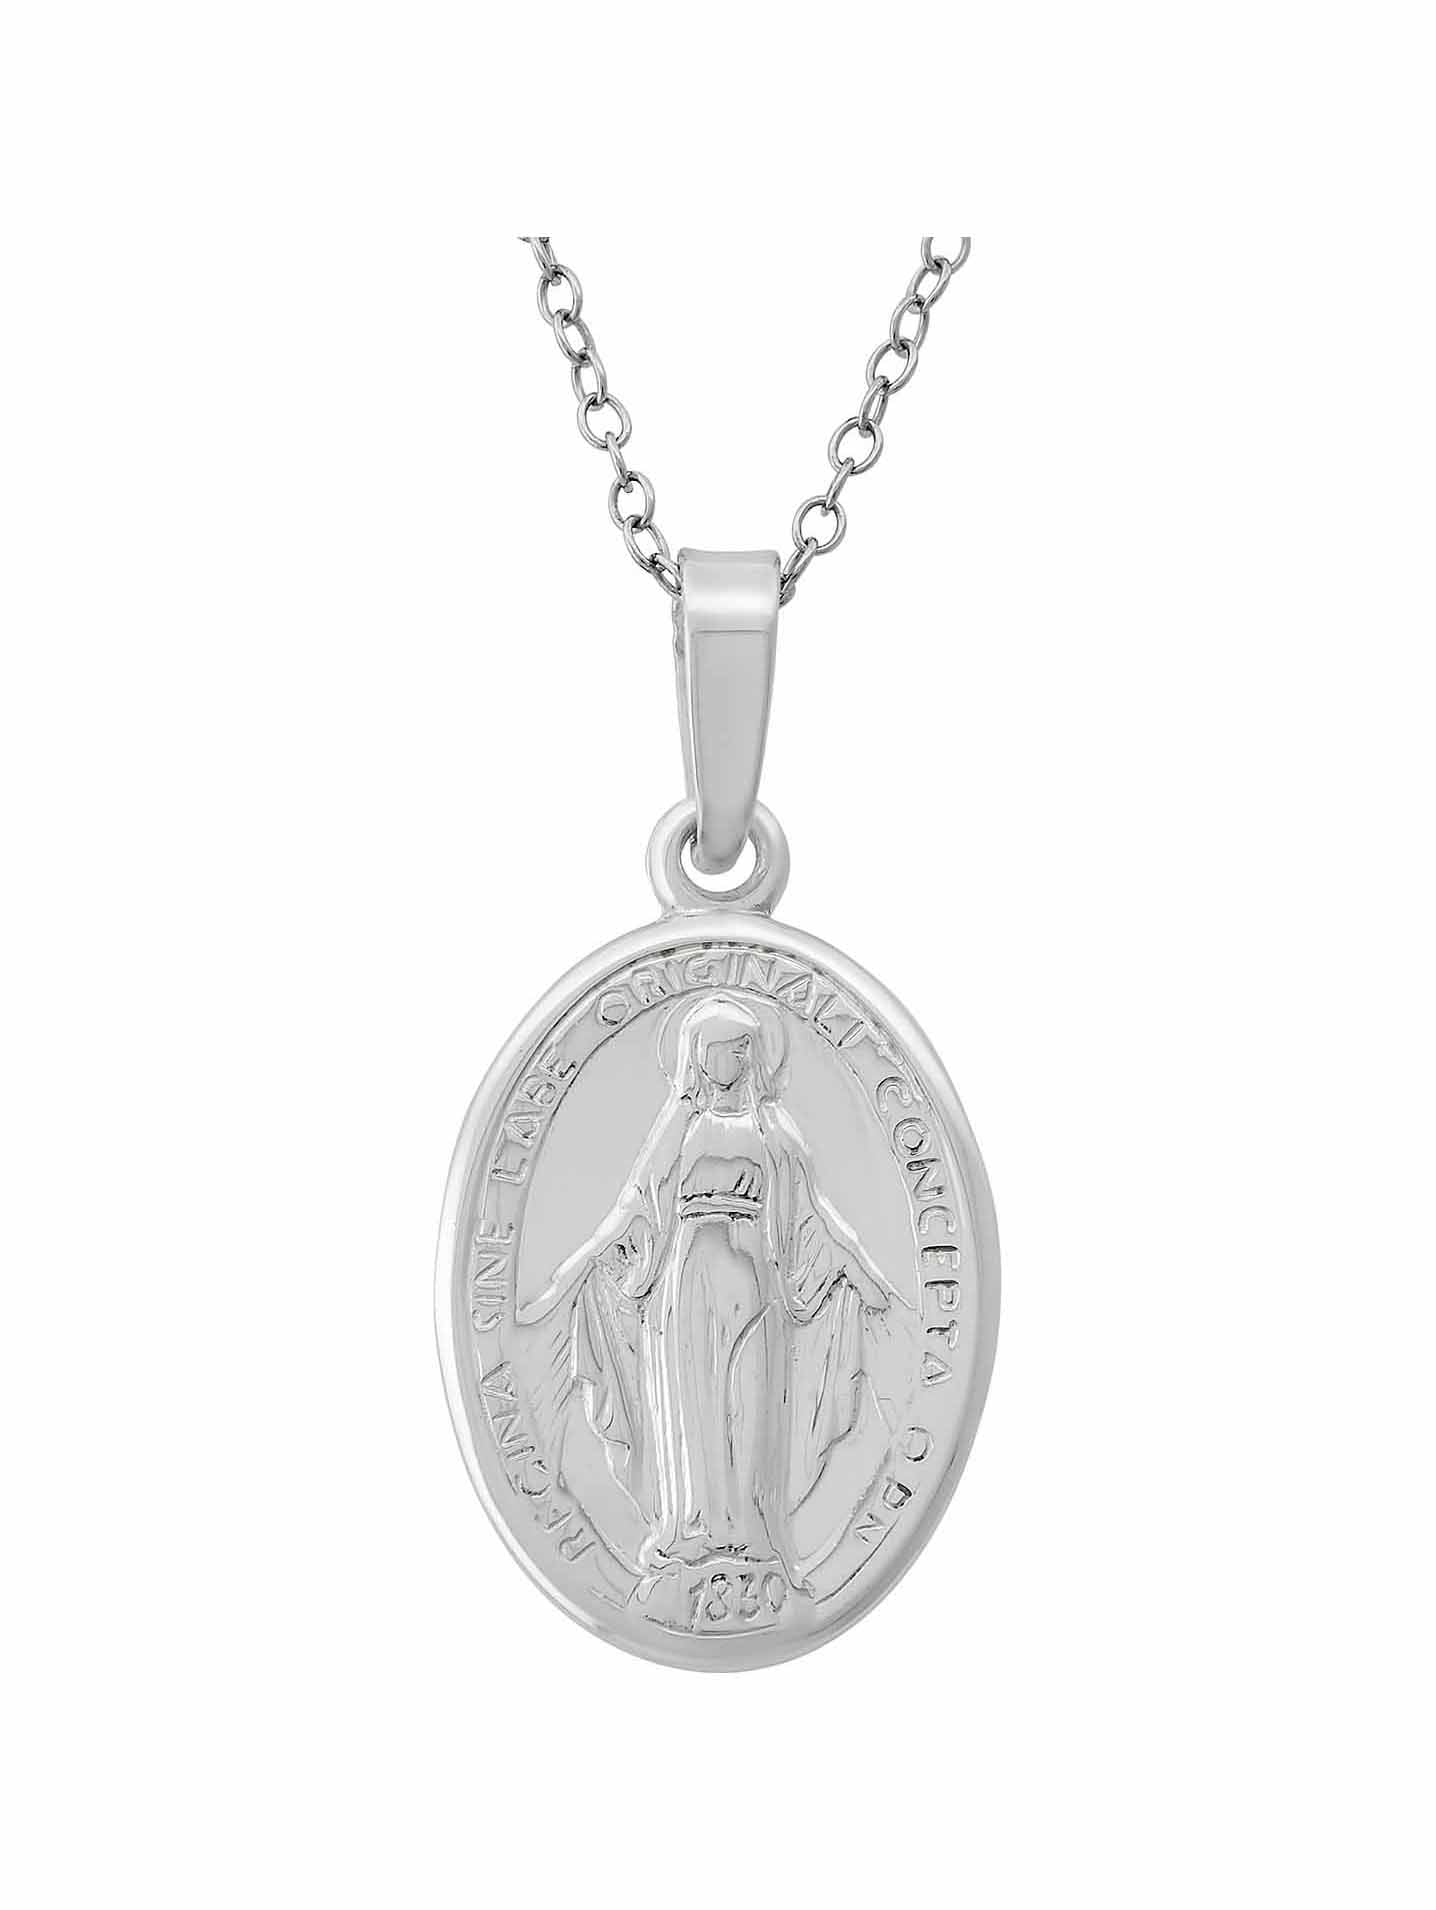 Details about   Unique Virgin Mary Silver Pendant Necklace 